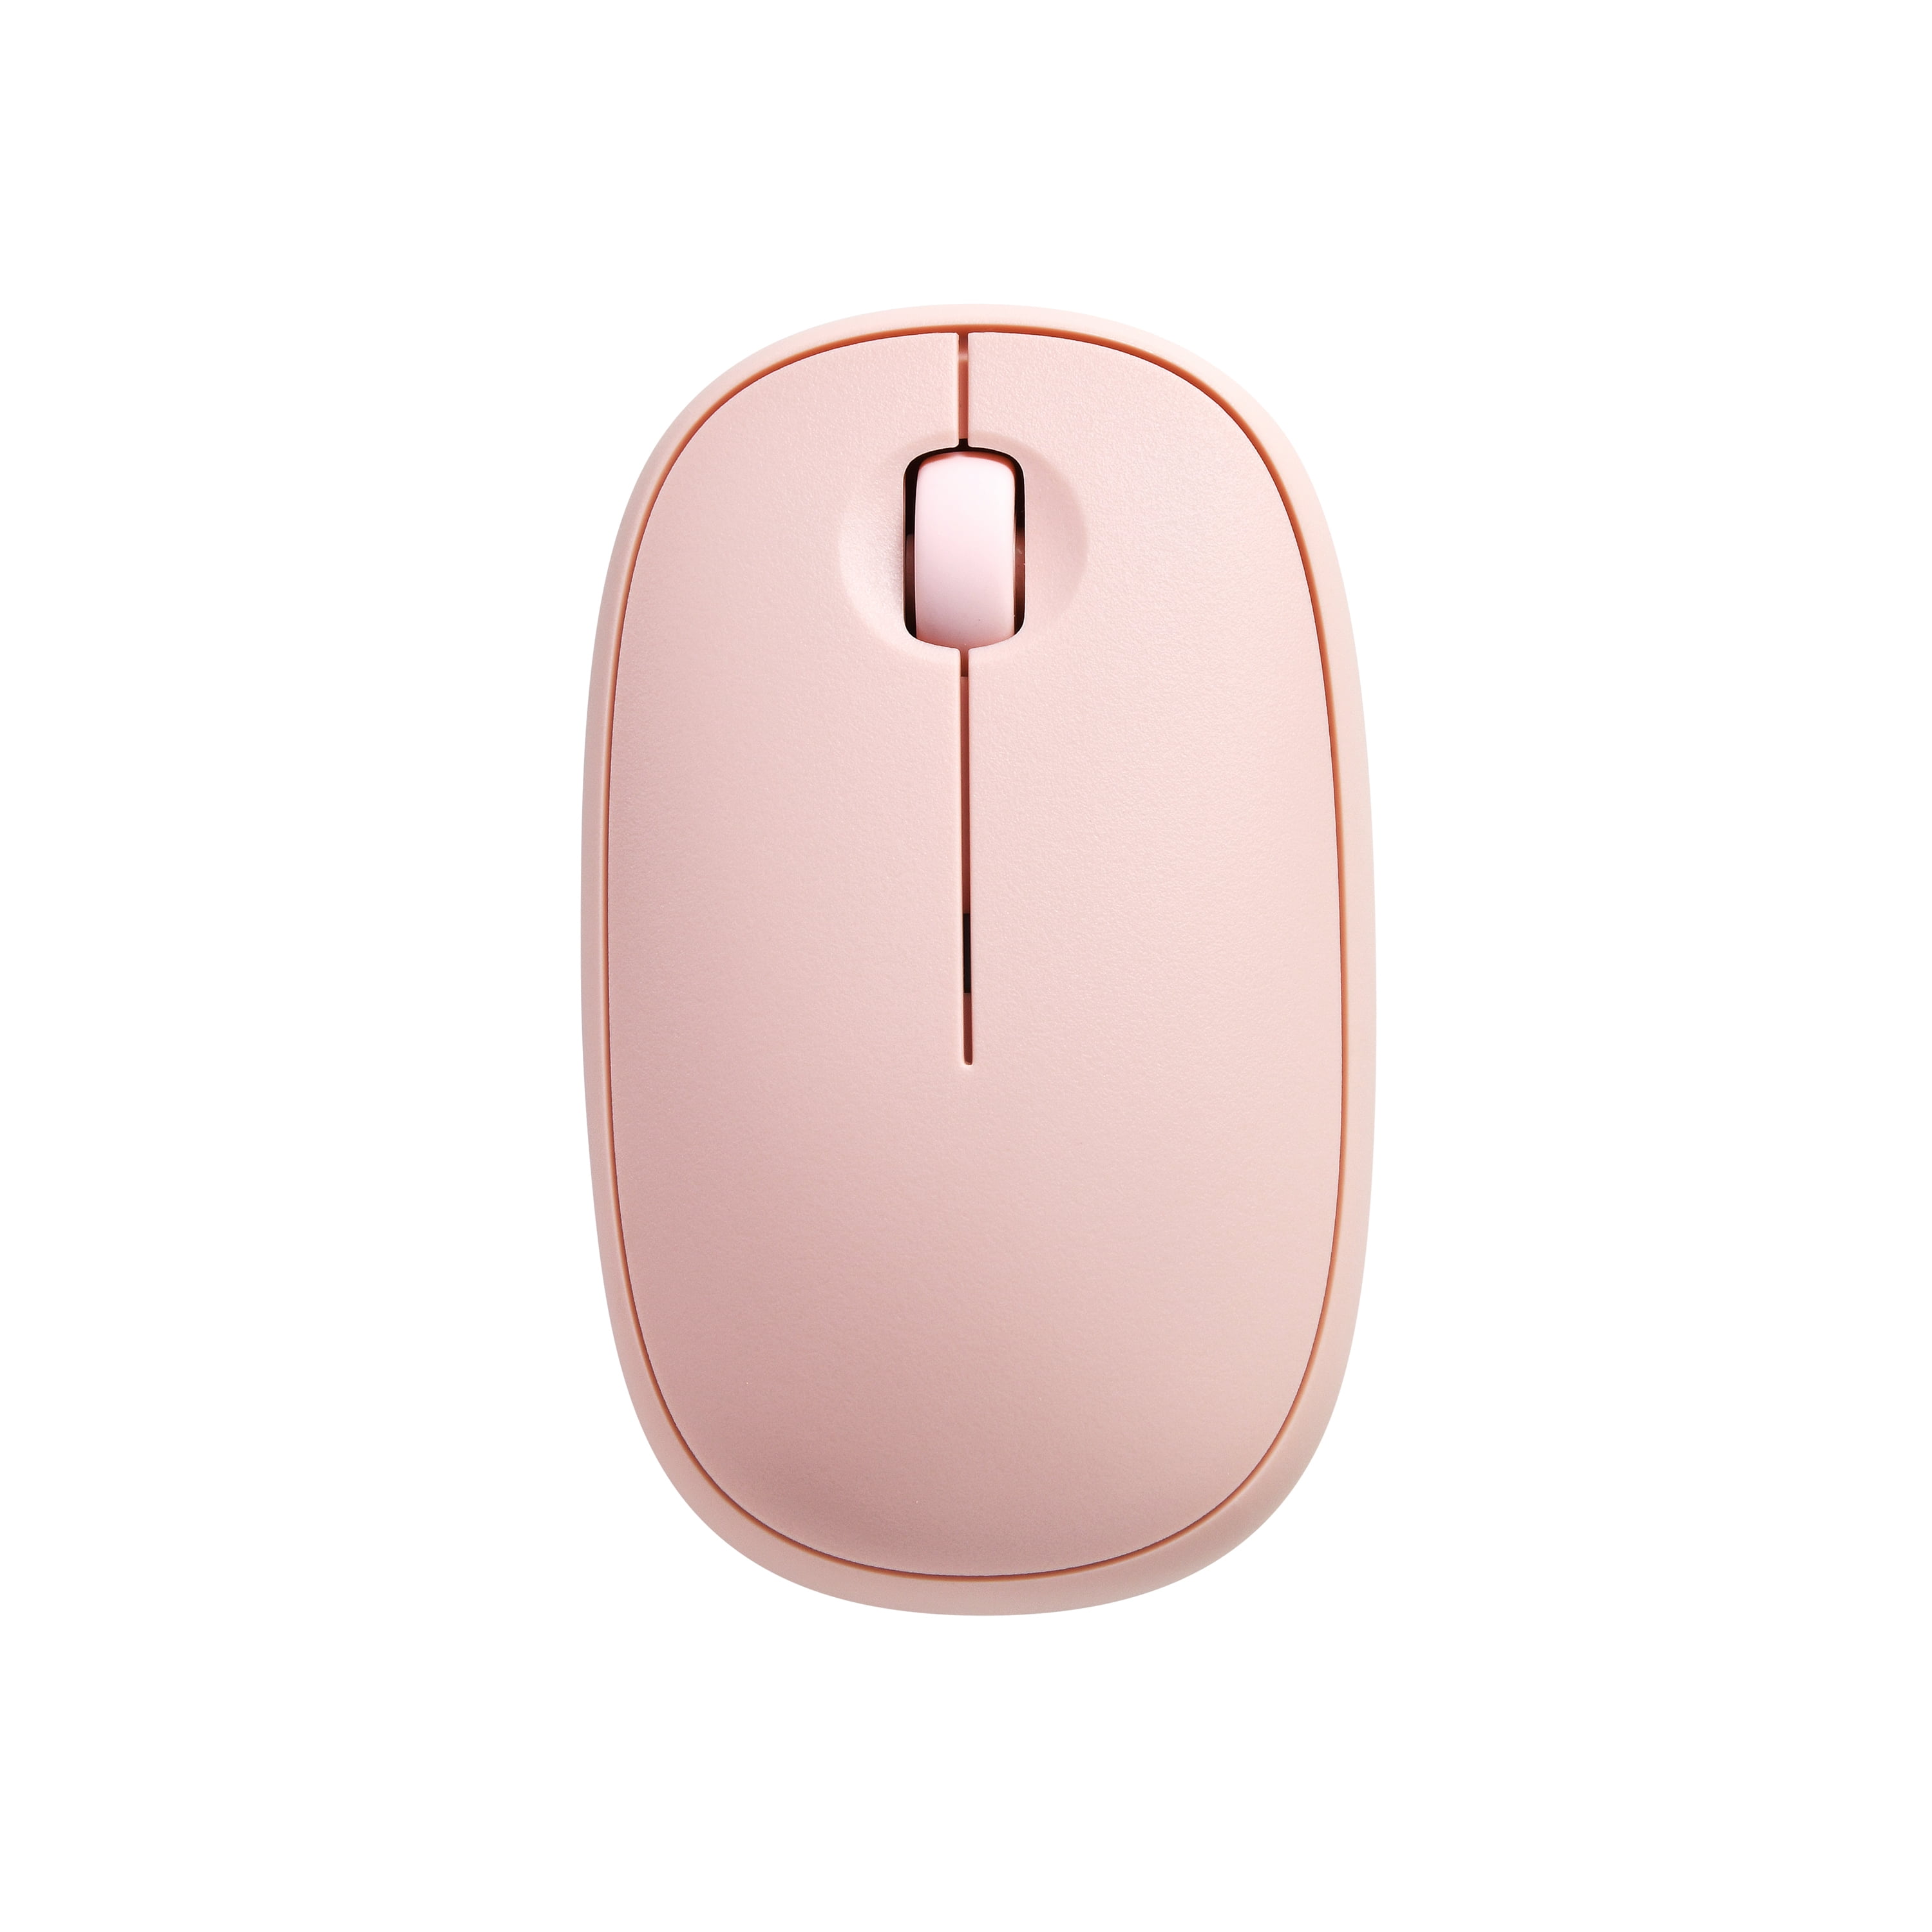 Slim 3-Button Computer Mouse, Bluetooth and Nano USB Receiver, 1600 DPI, - Walmart.com